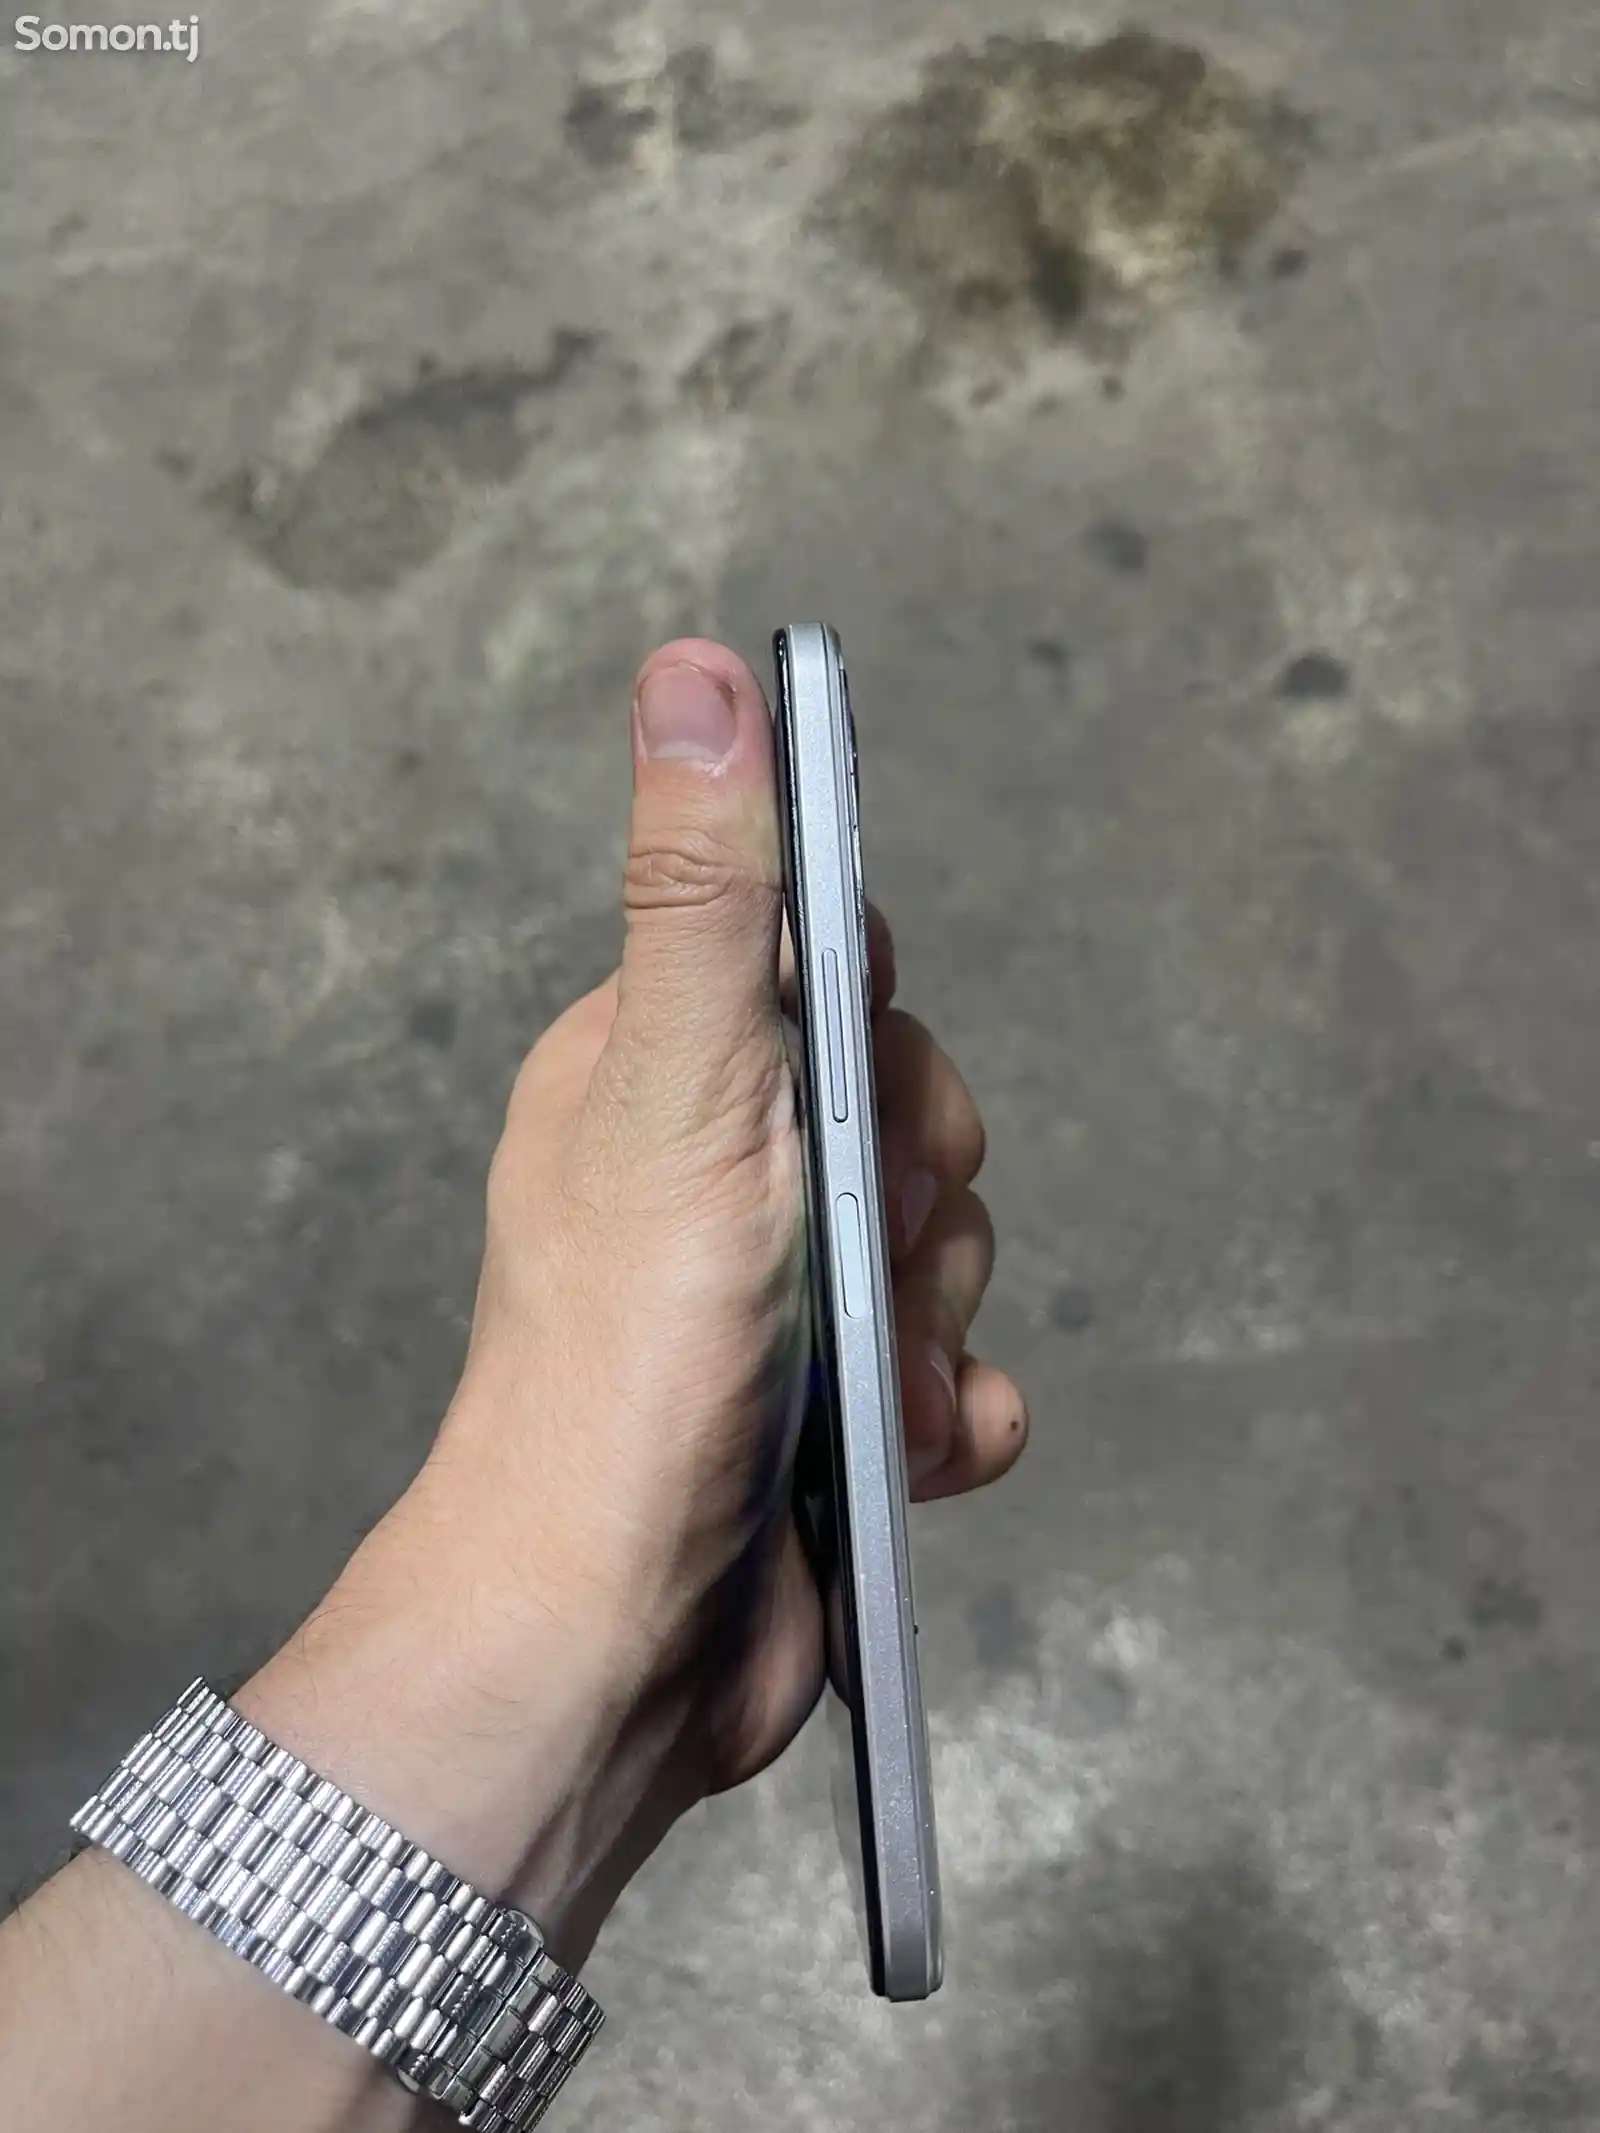 Телефон Huawei-3